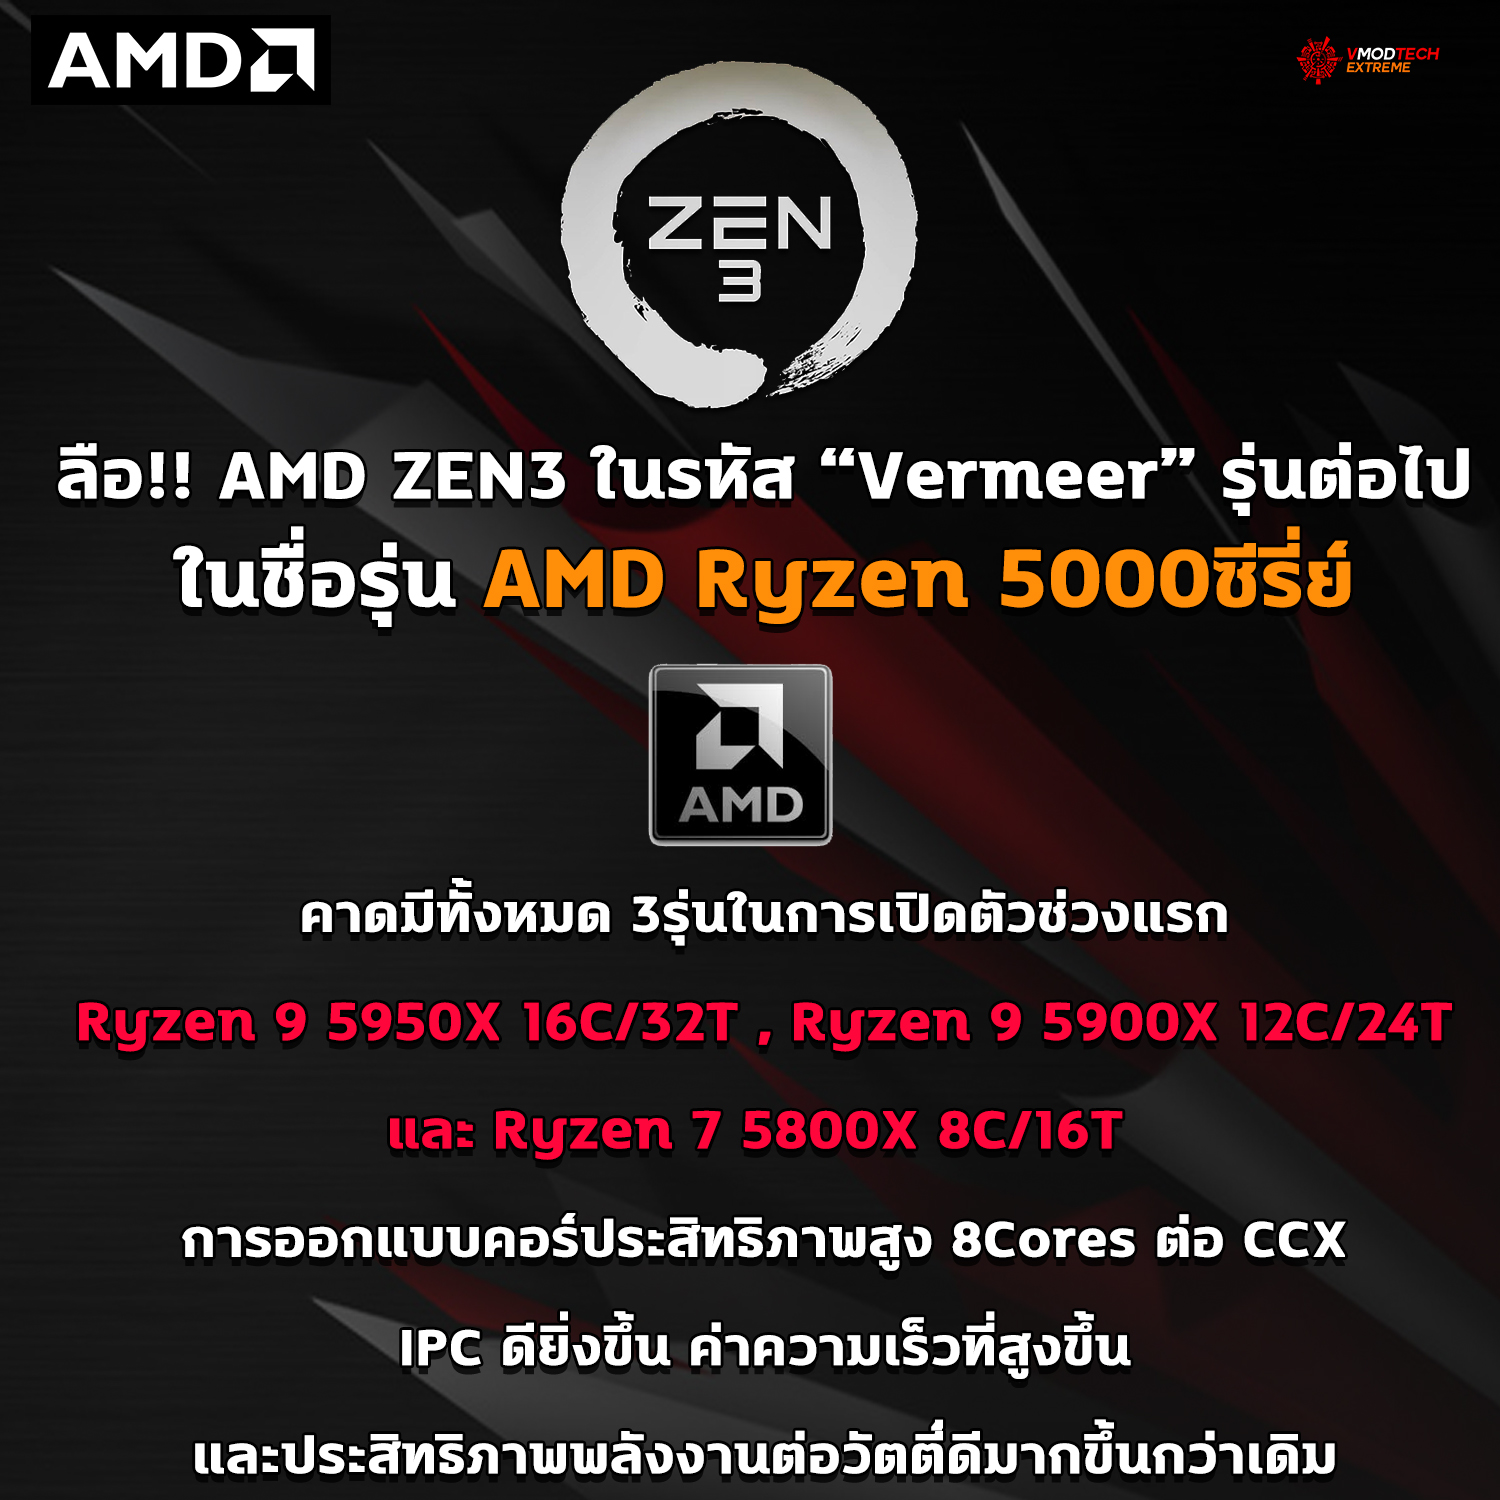 amd zen3 ryzen50001 ลือ!! AMD ZEN3 ในรหัส Vermeer รุ่นต่อไปจะใช้ชื่อรุ่น AMD Ryzen 5000ซีรี่ย์แทนรุ่น 4000 ที่มีข่าวออกไปก่อนหน้านี้ 